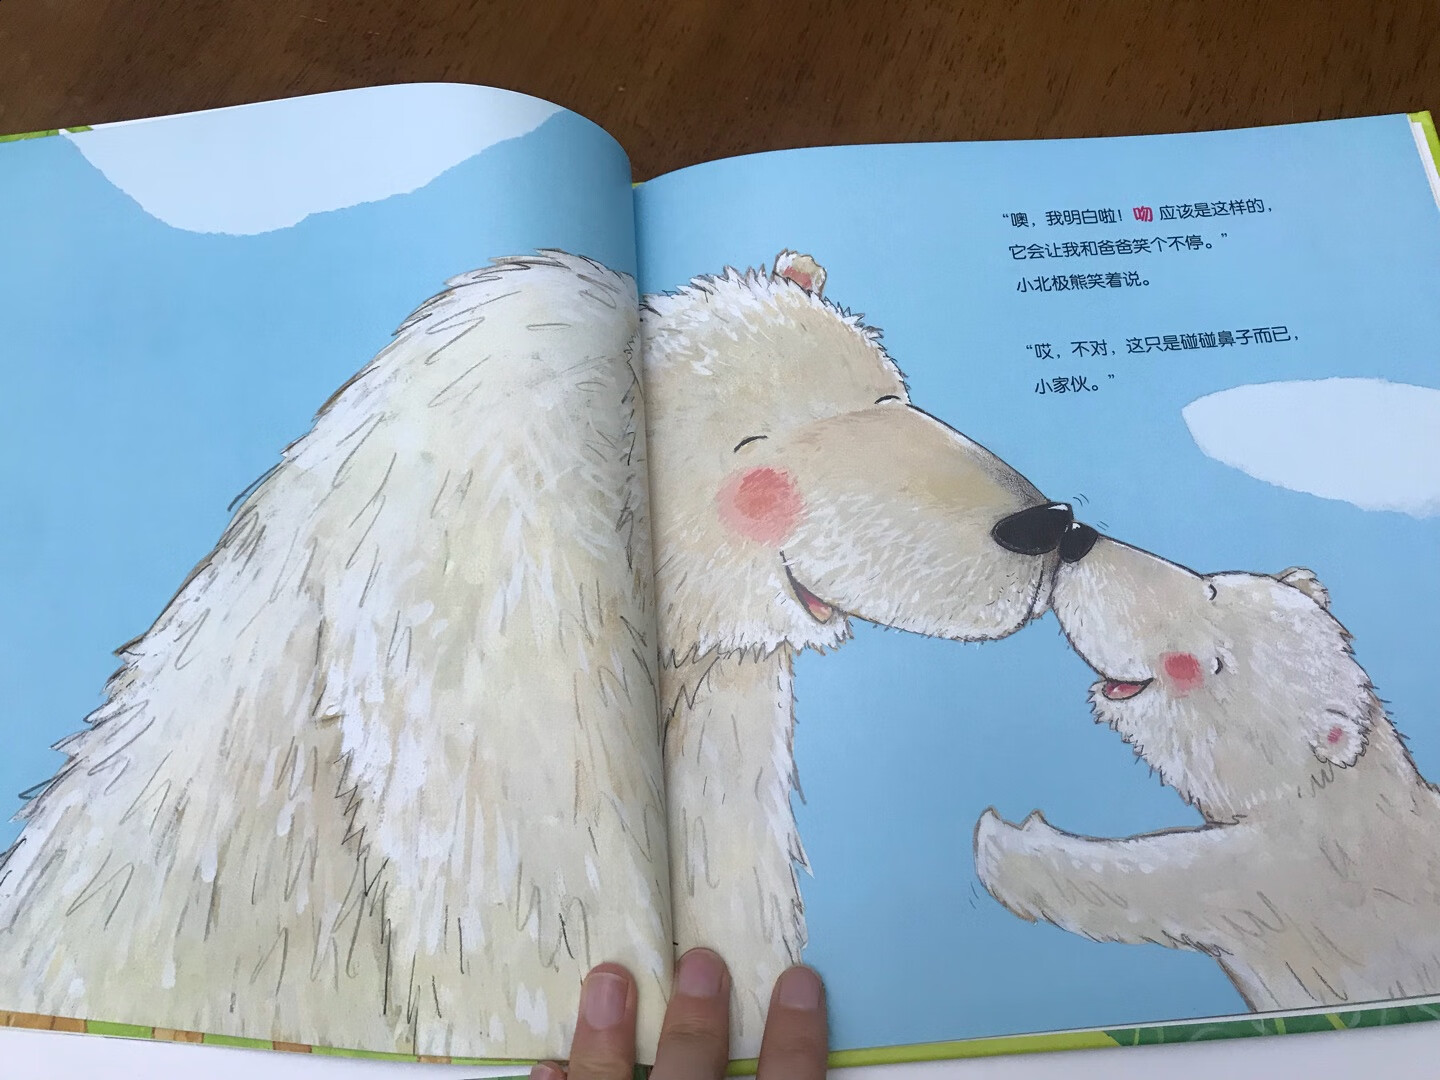 非常温馨可爱的一本绘本，通过动物对吻的讨论，来传递爱和亲情，每个人对爱和亲情的理解都不一样，也是在告诉家长，怎么表达自己对孩子的爱。简单但是又很打动人的一本书。